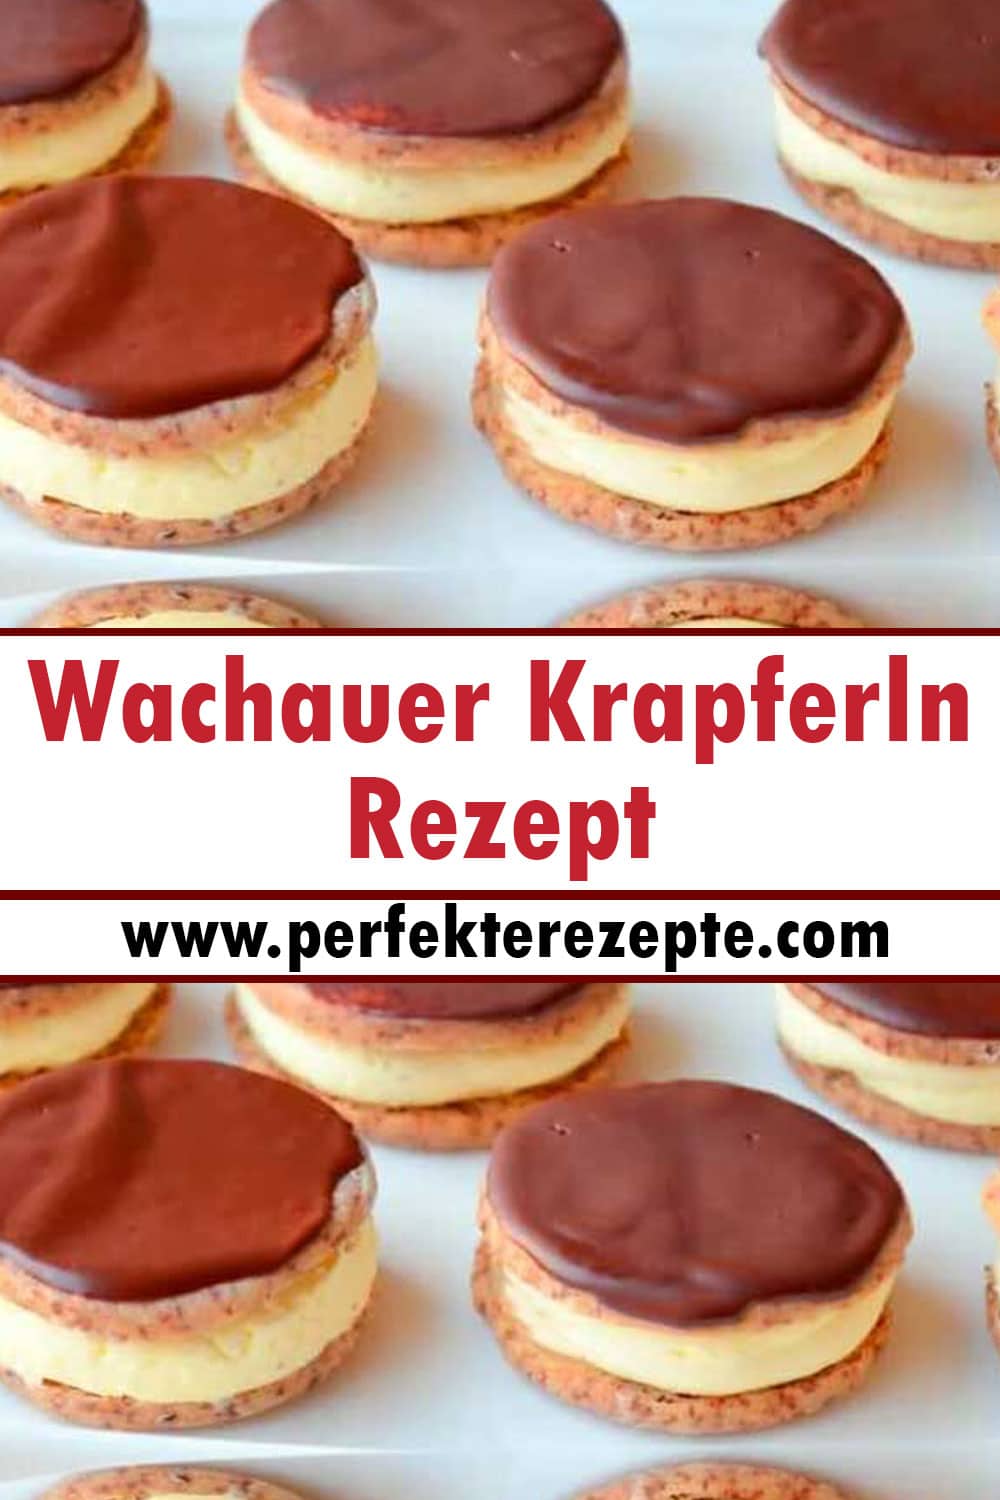 Wachauer Krapferln Rezept